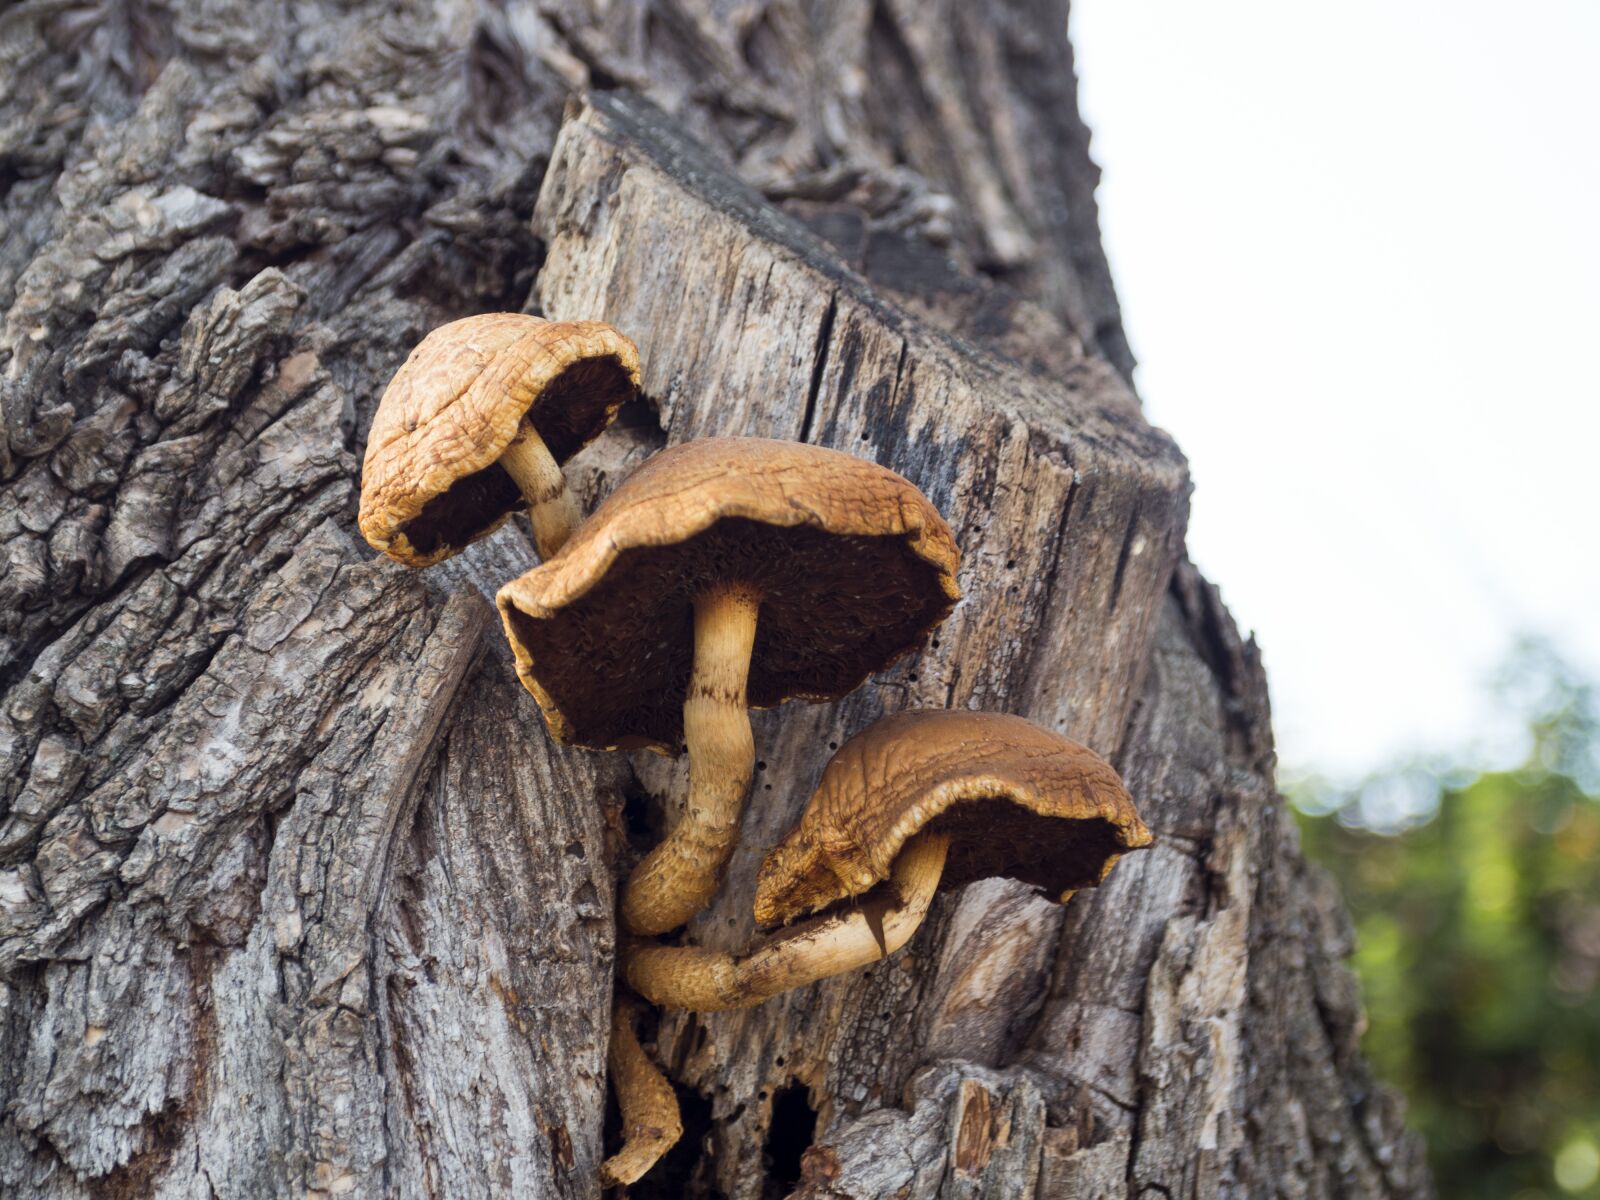 smc PENTAX-FA 28-105mm F4-5.6 sample photo. Mushroom, wood, autumn photography